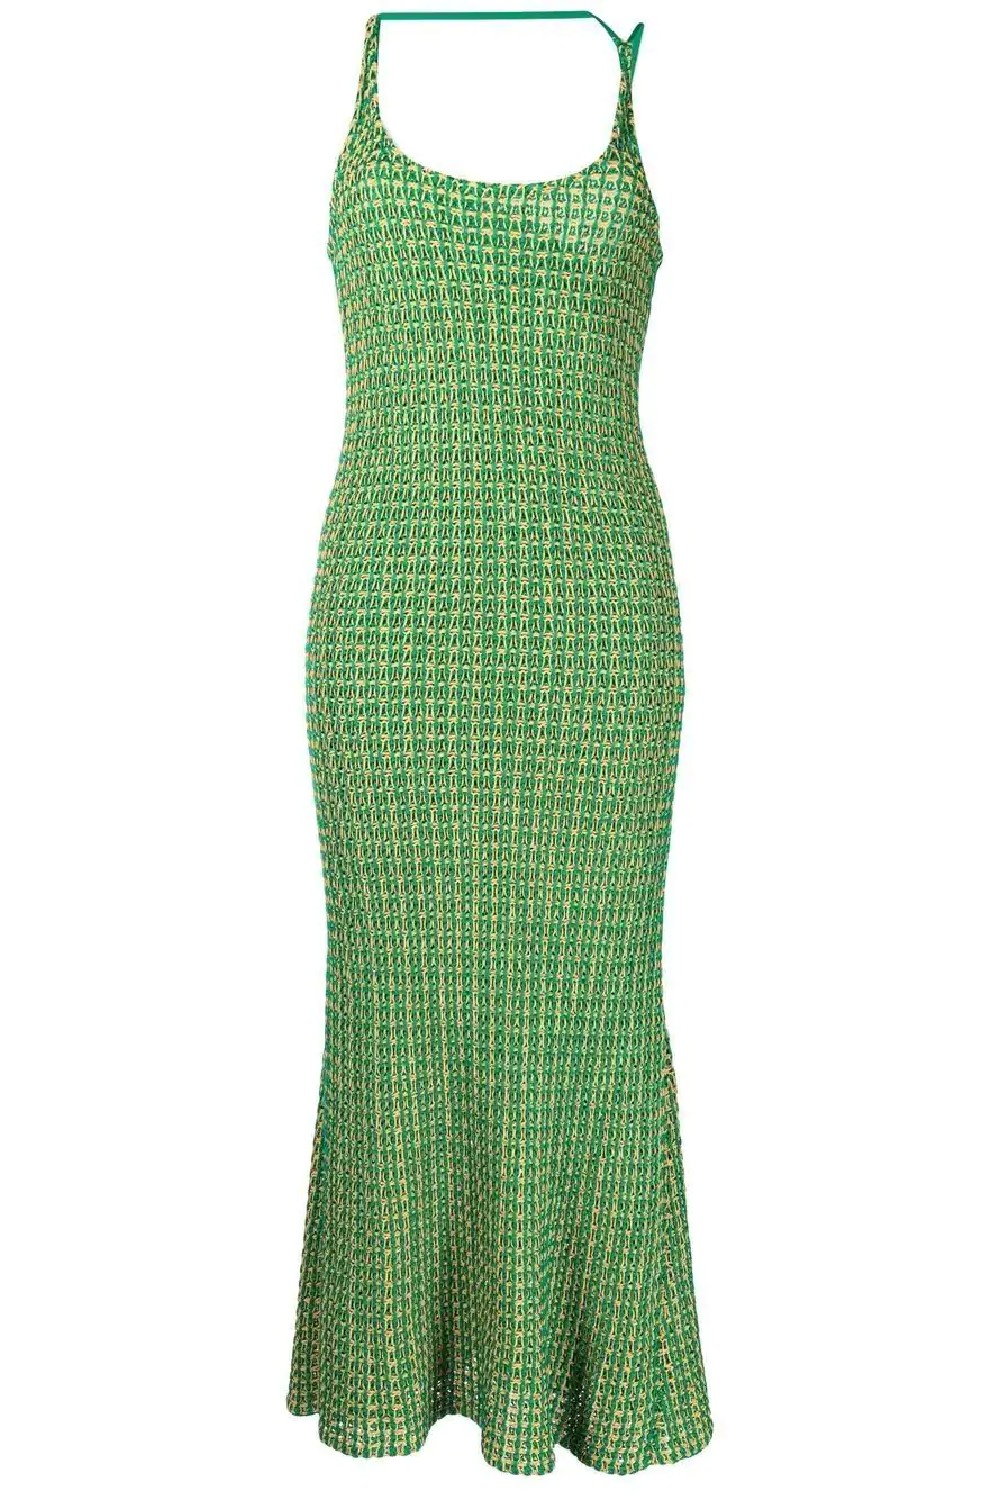 Green-Dress